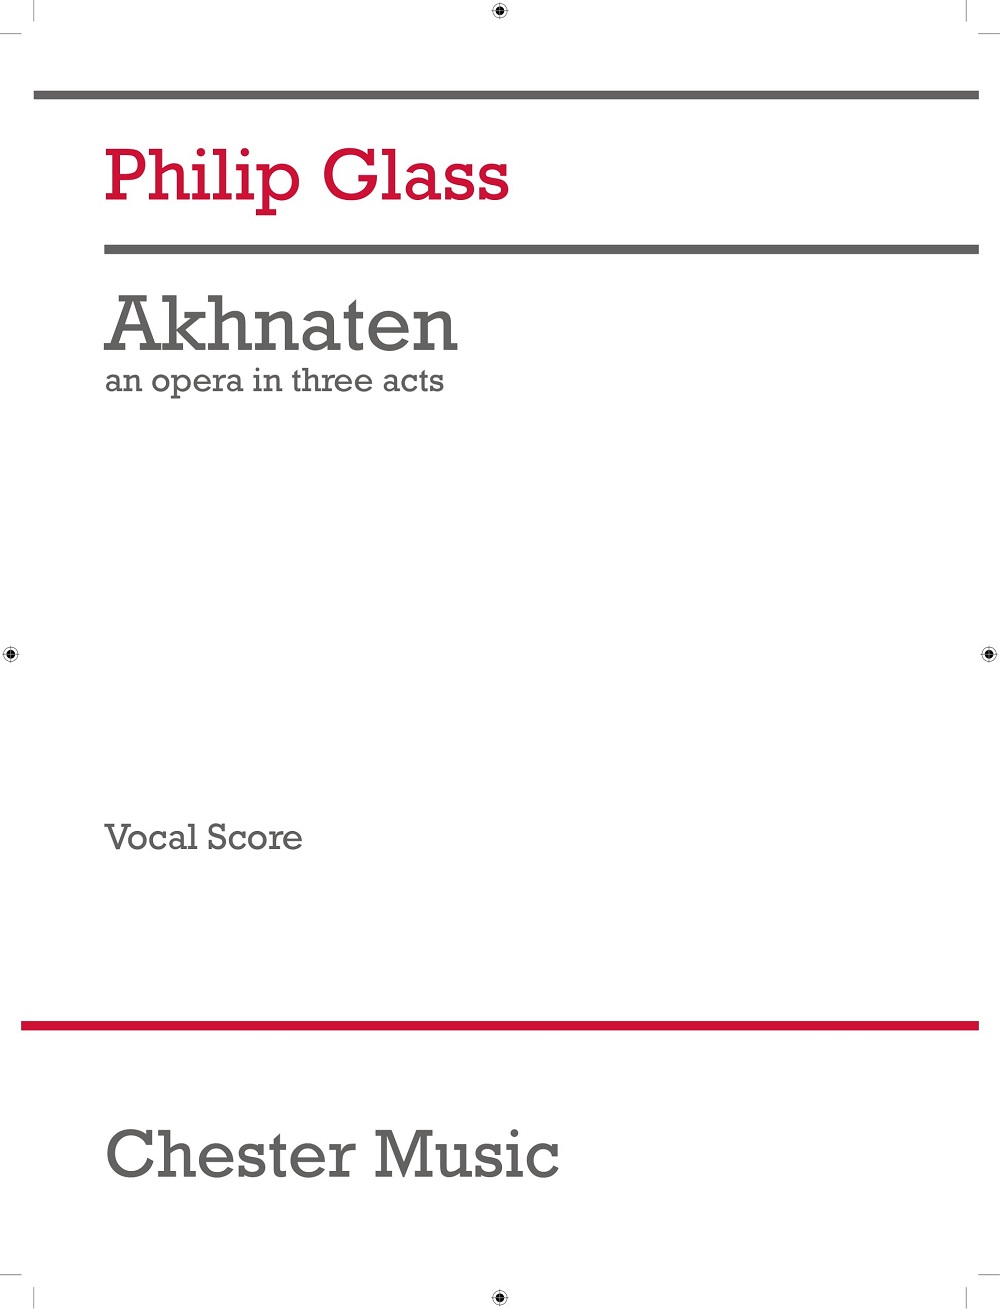 Akhnaten (Vocal Score - 2017 Edition) (GLASS PHILIP)